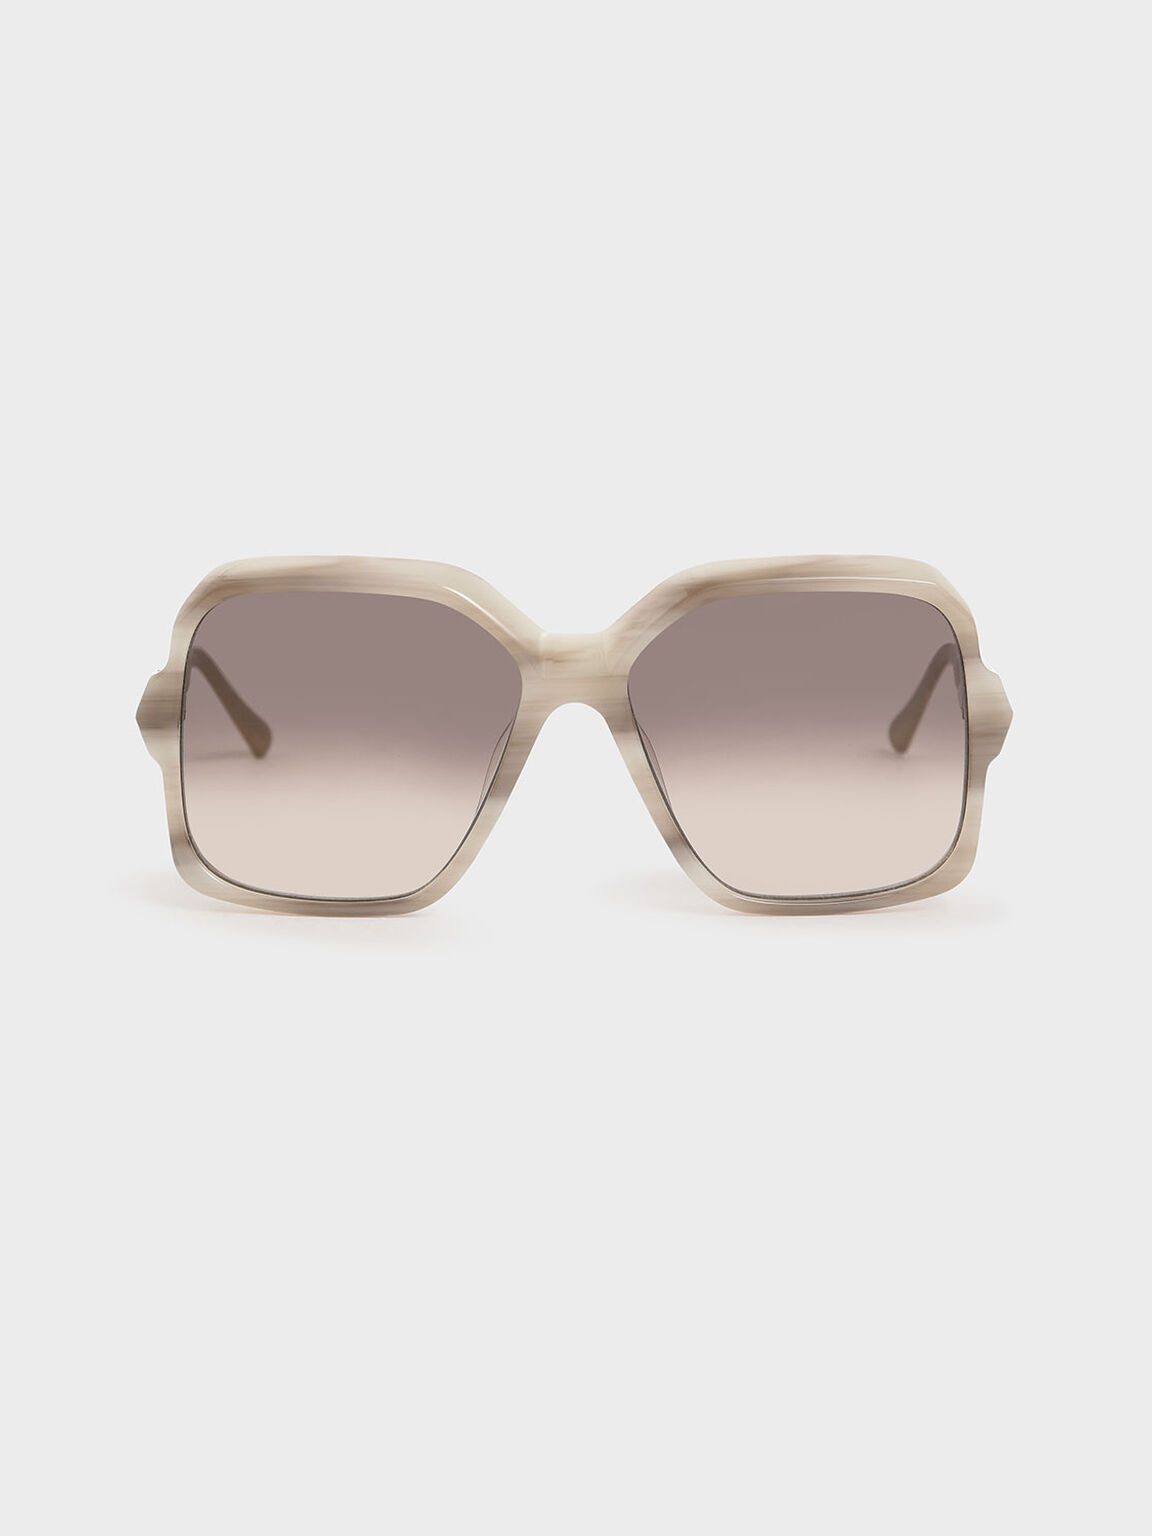 Oversized Square Sunglasses, Cream, hi-res